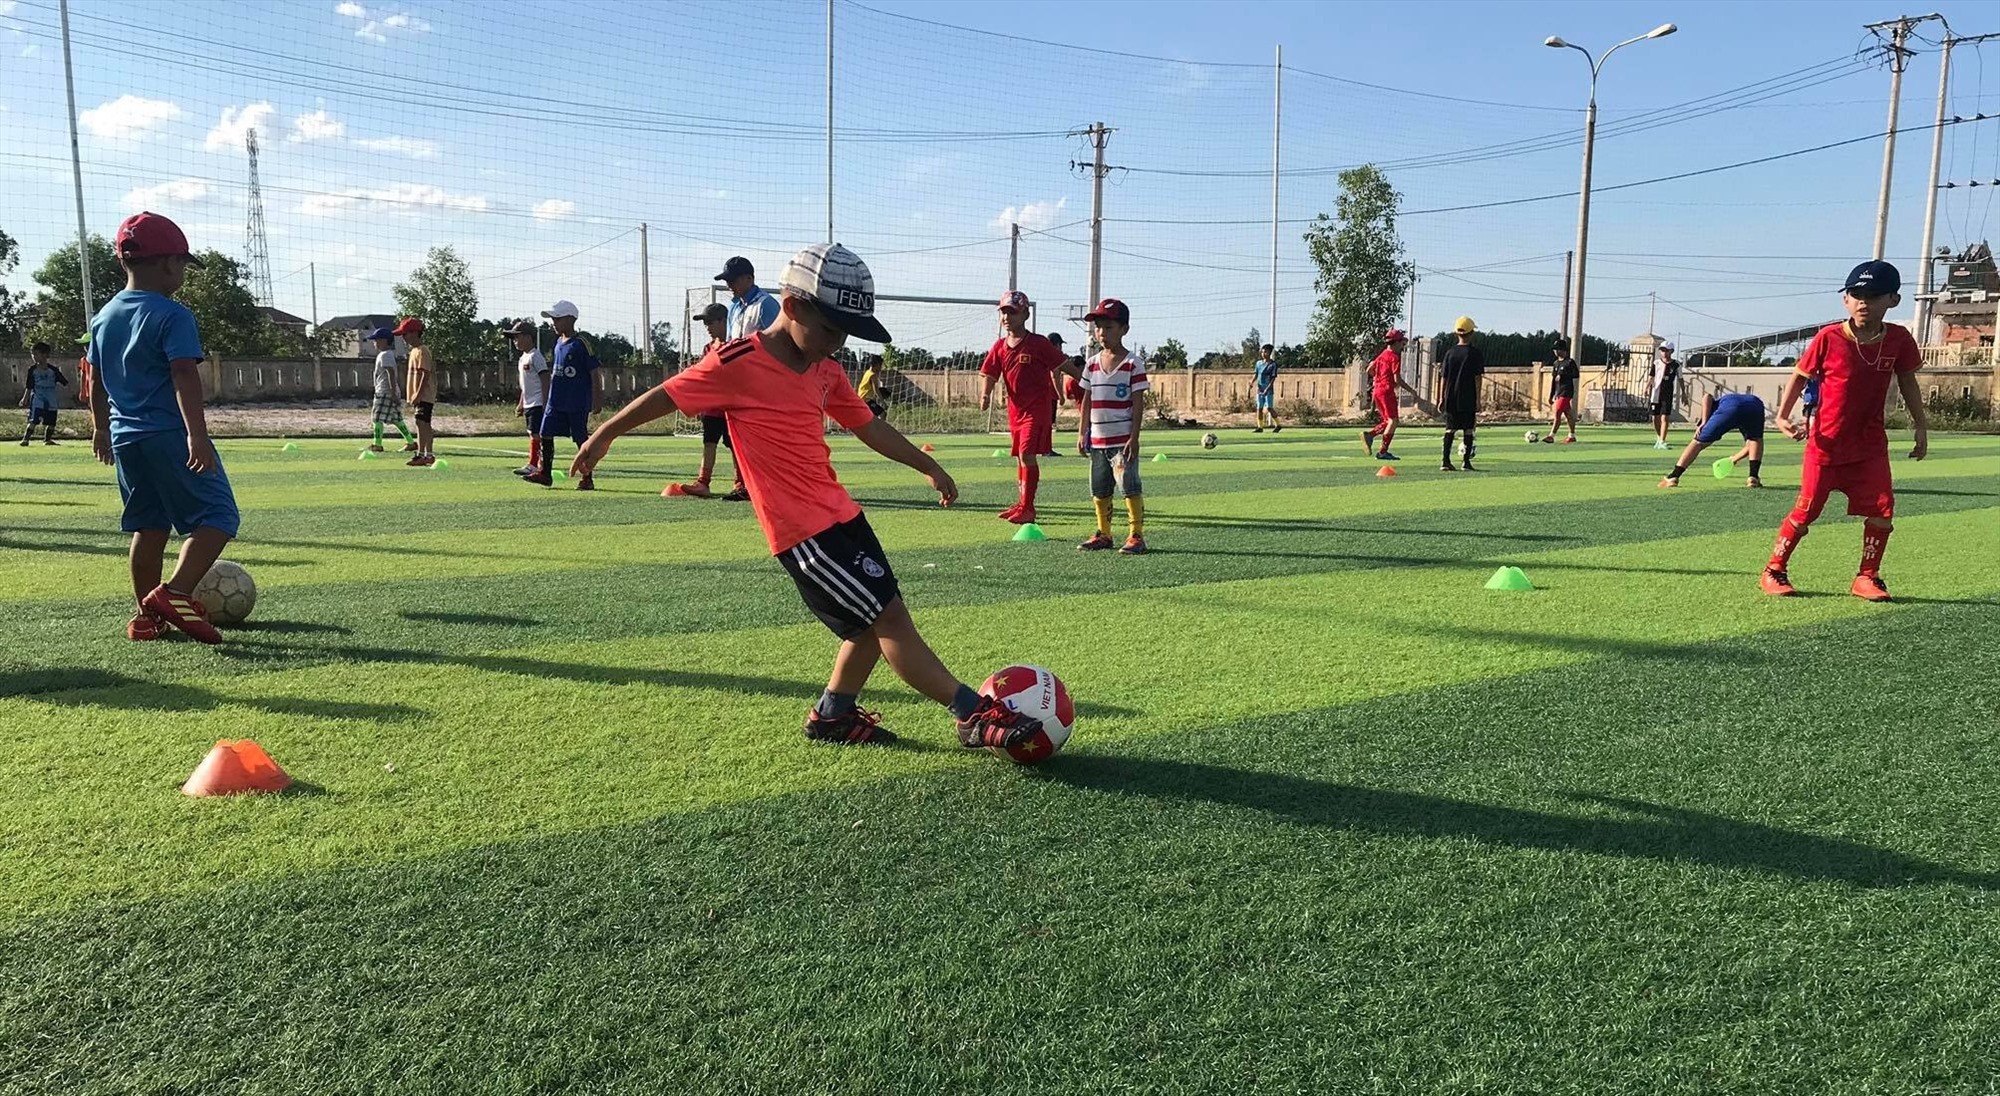 Lớp đào tạo bóng đá trẻ hè 2020 đã tạo sân chơi bổ ích, lành mạnh và cơ hội phát triển tài năng bóng đá cho trẻ em huyện Hải Lăng - Ảnh: Minh Đức